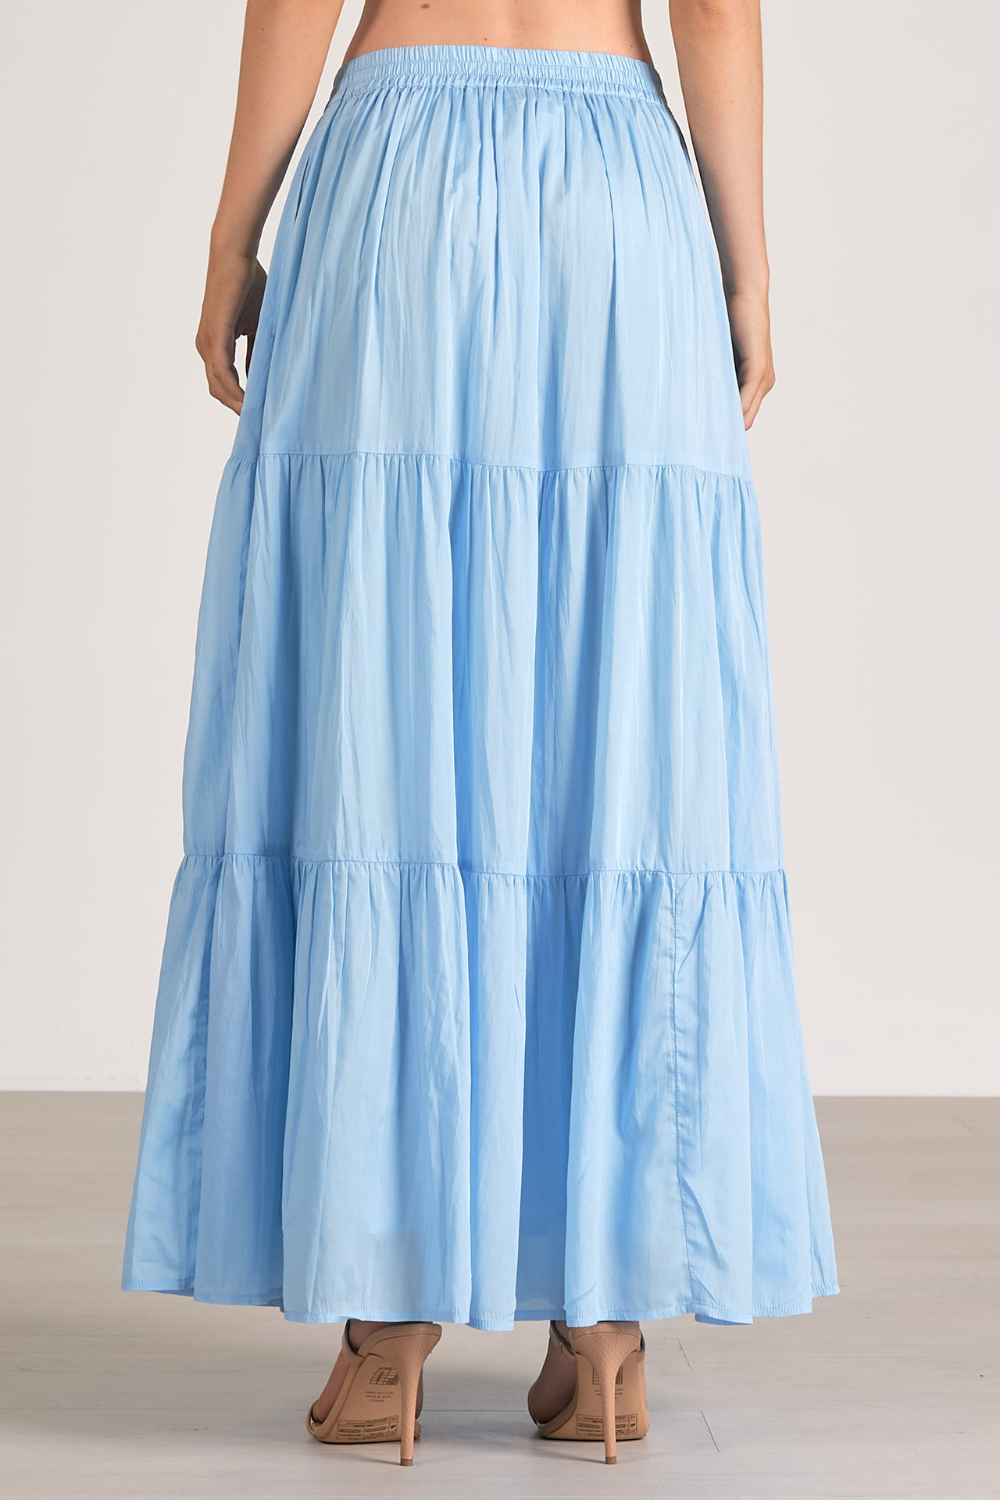 Elan Evangeline Maxi Skirt - Blue